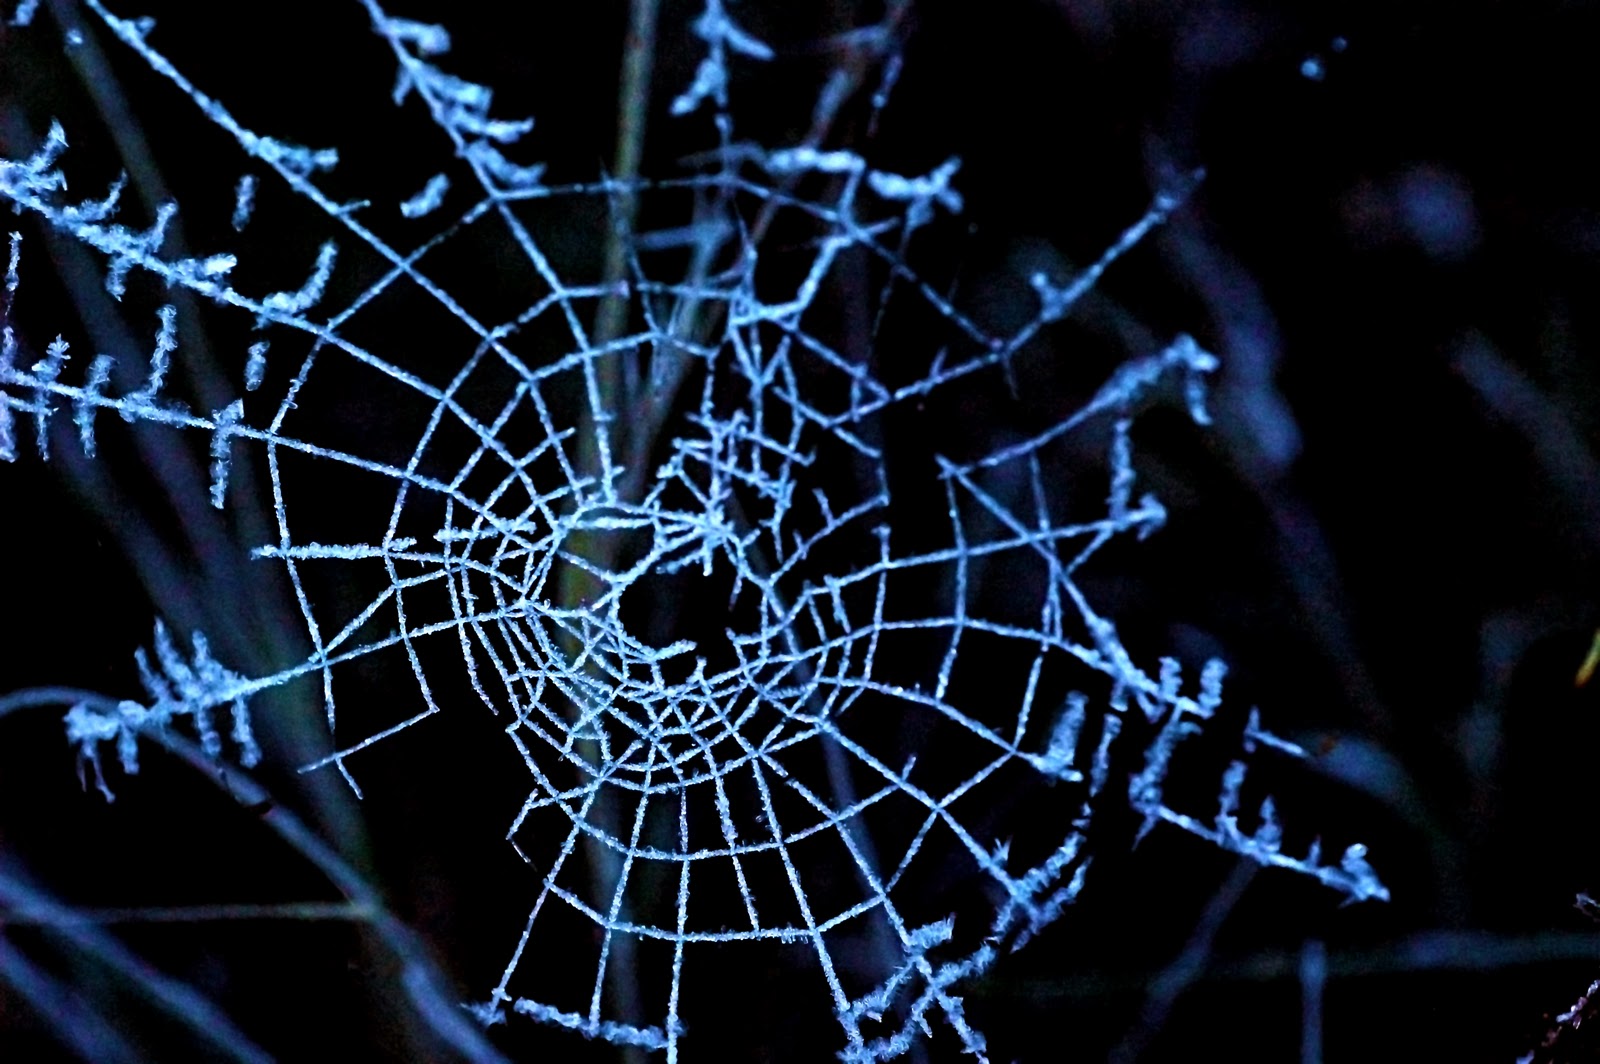 Amazing Spider Webs